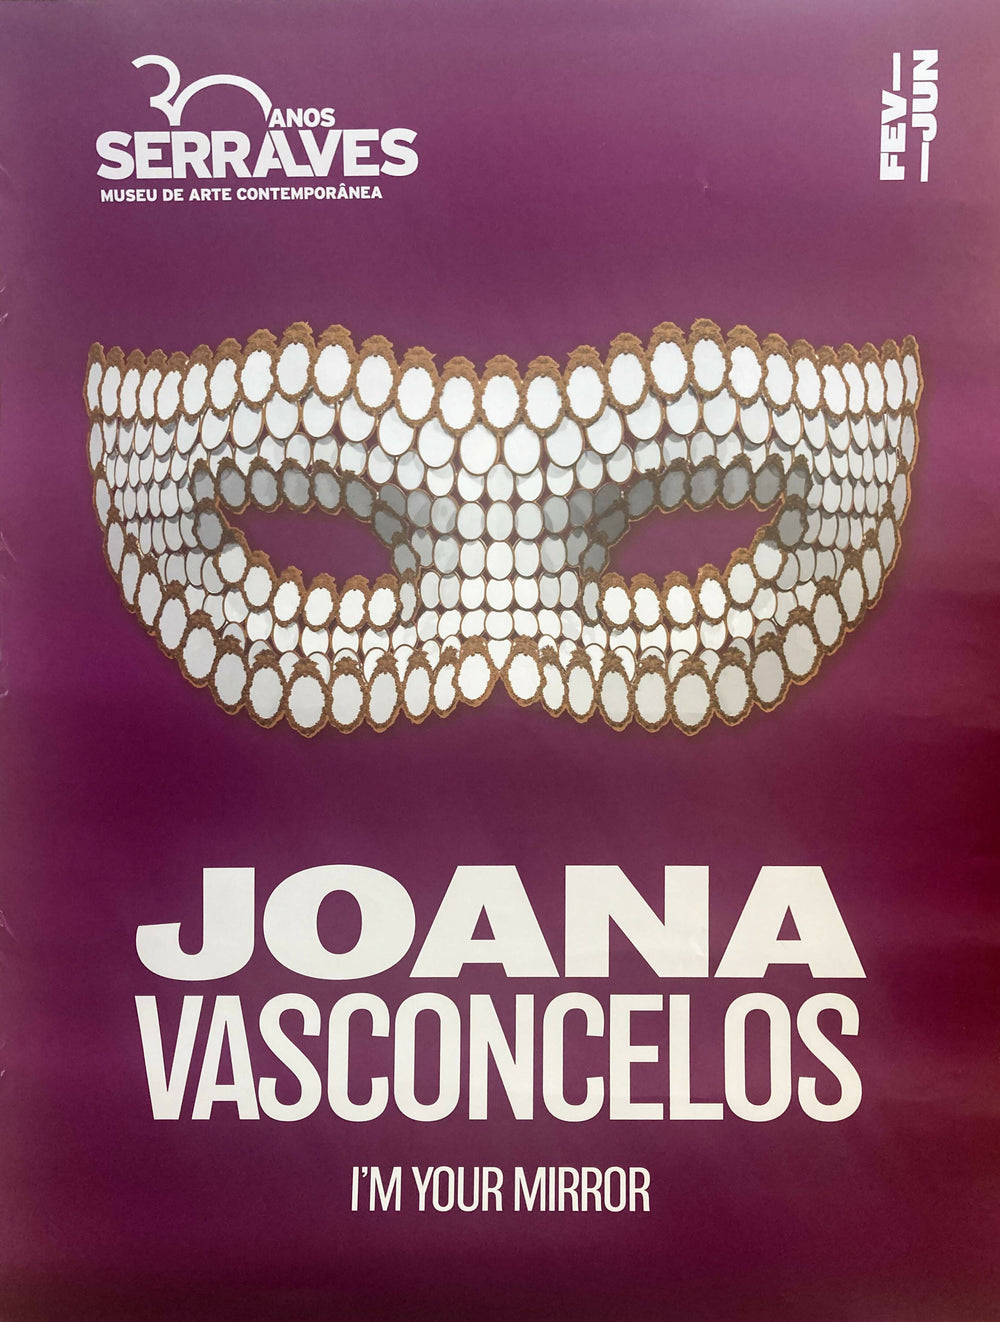 Joana Vasconcelos | P55.ART.